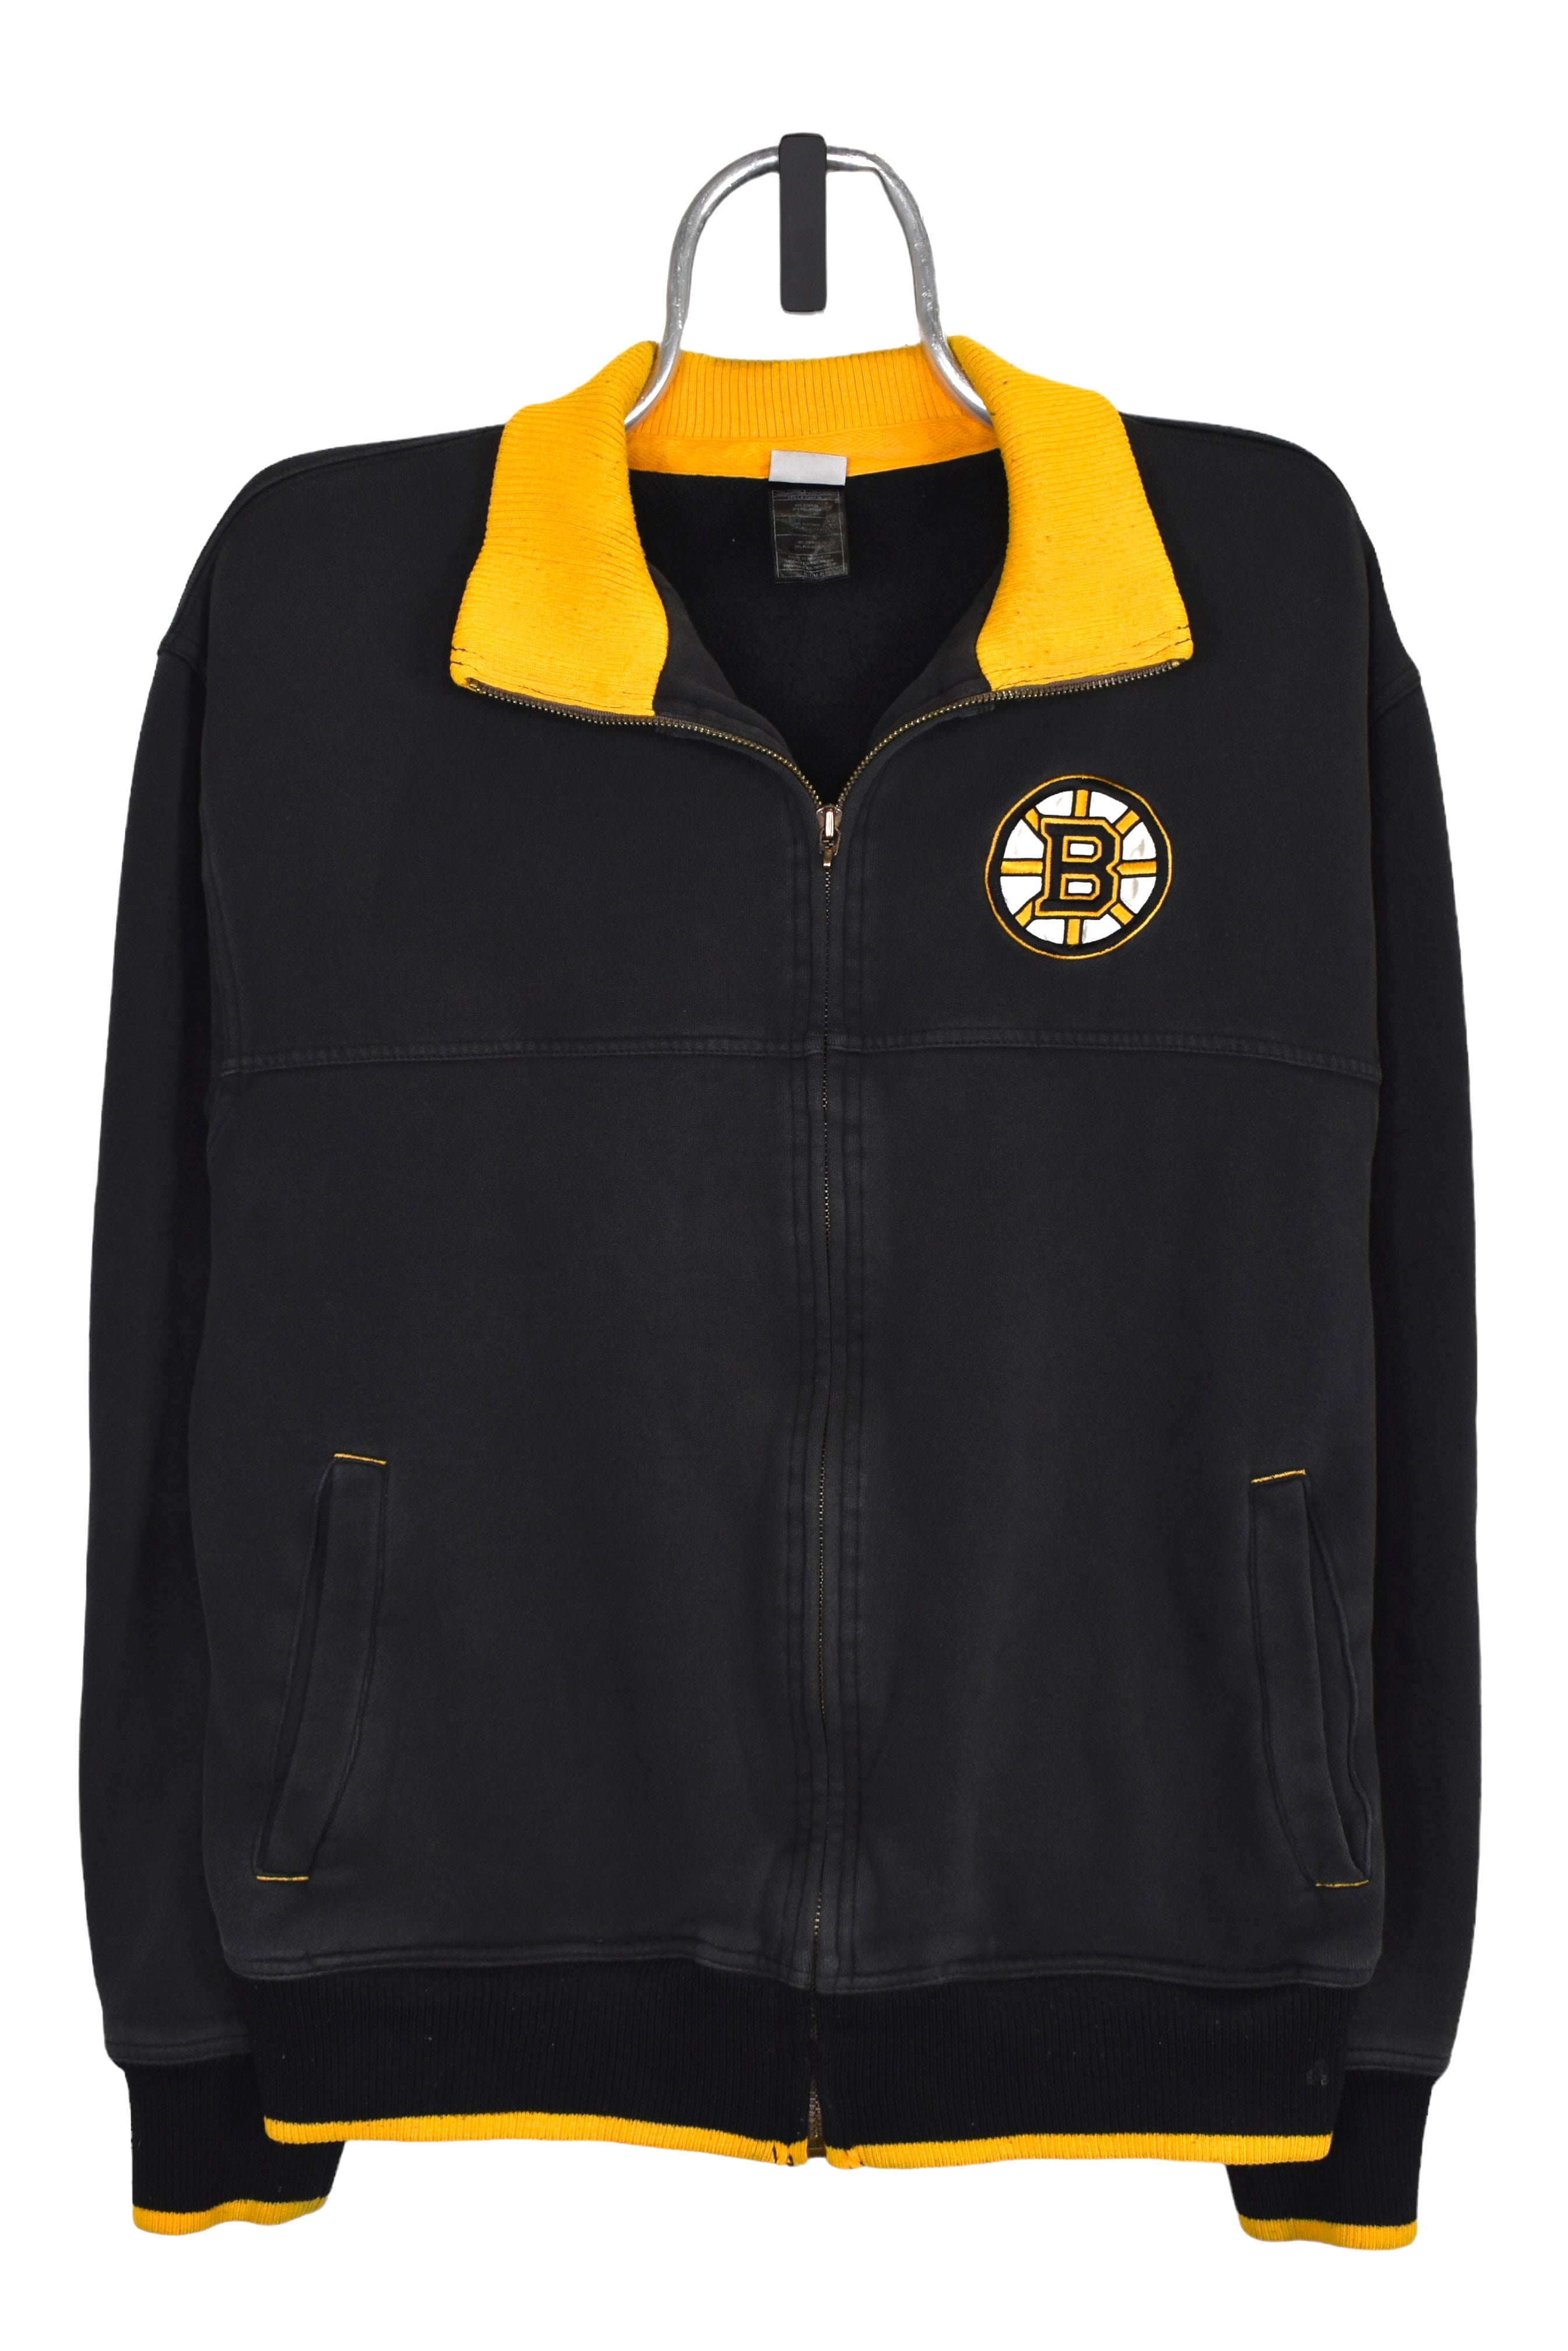 Vintage Boston Bruins jacket (M), black NHL embroidered sweatshirt